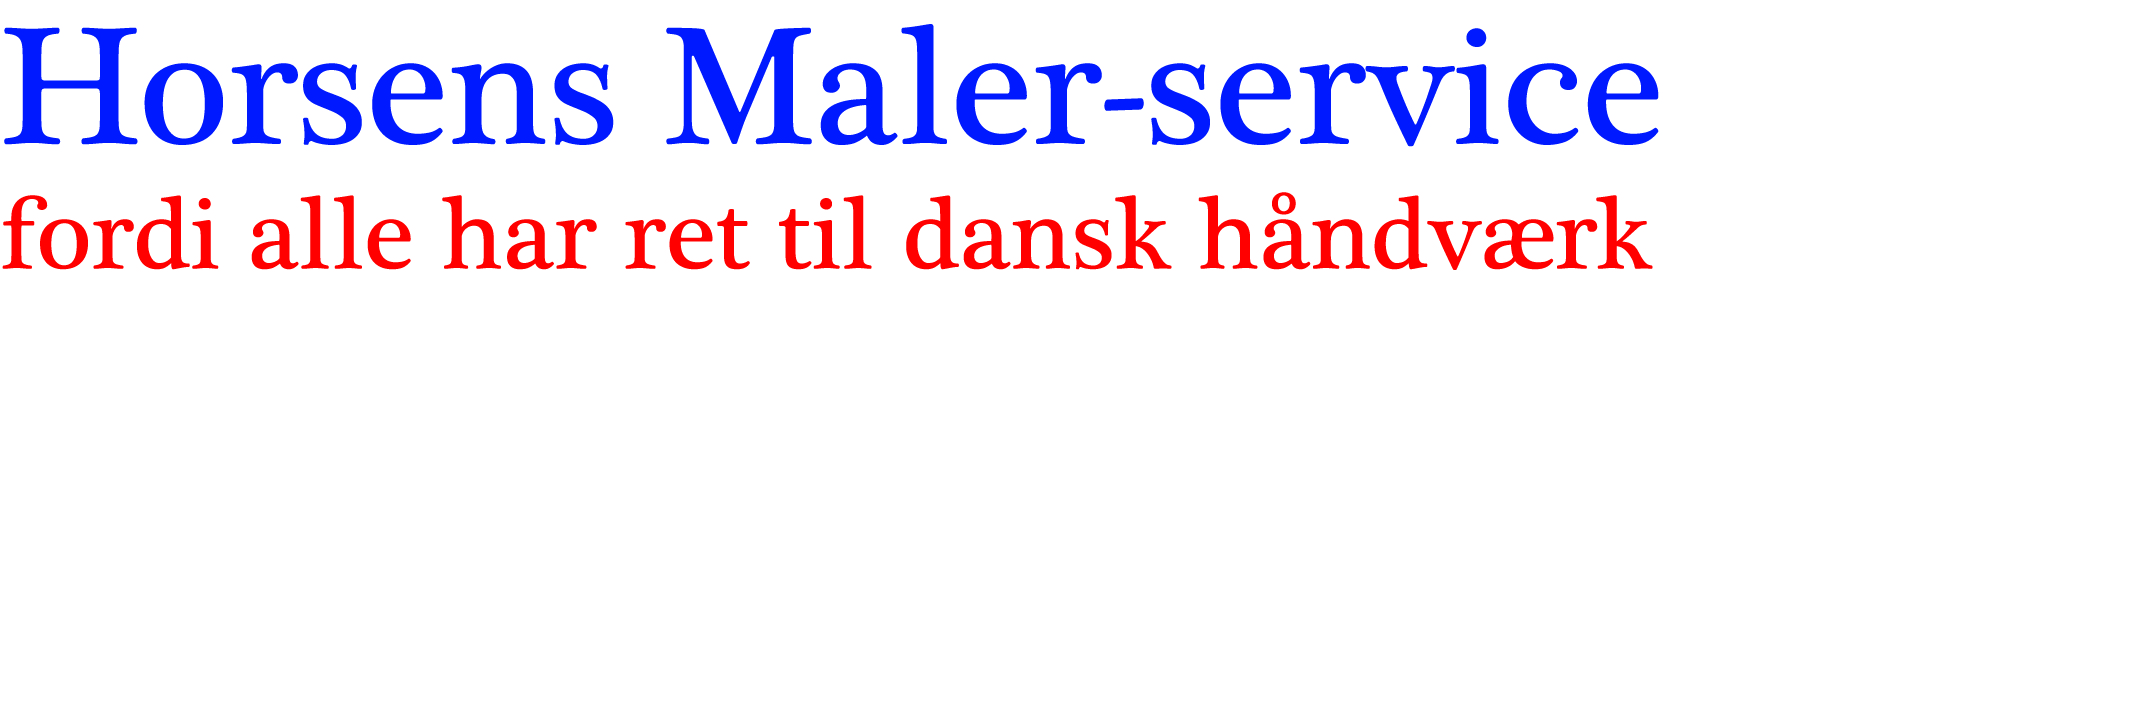 rytter-sponsorer-2015/horsensmaler-service-logo.jpg